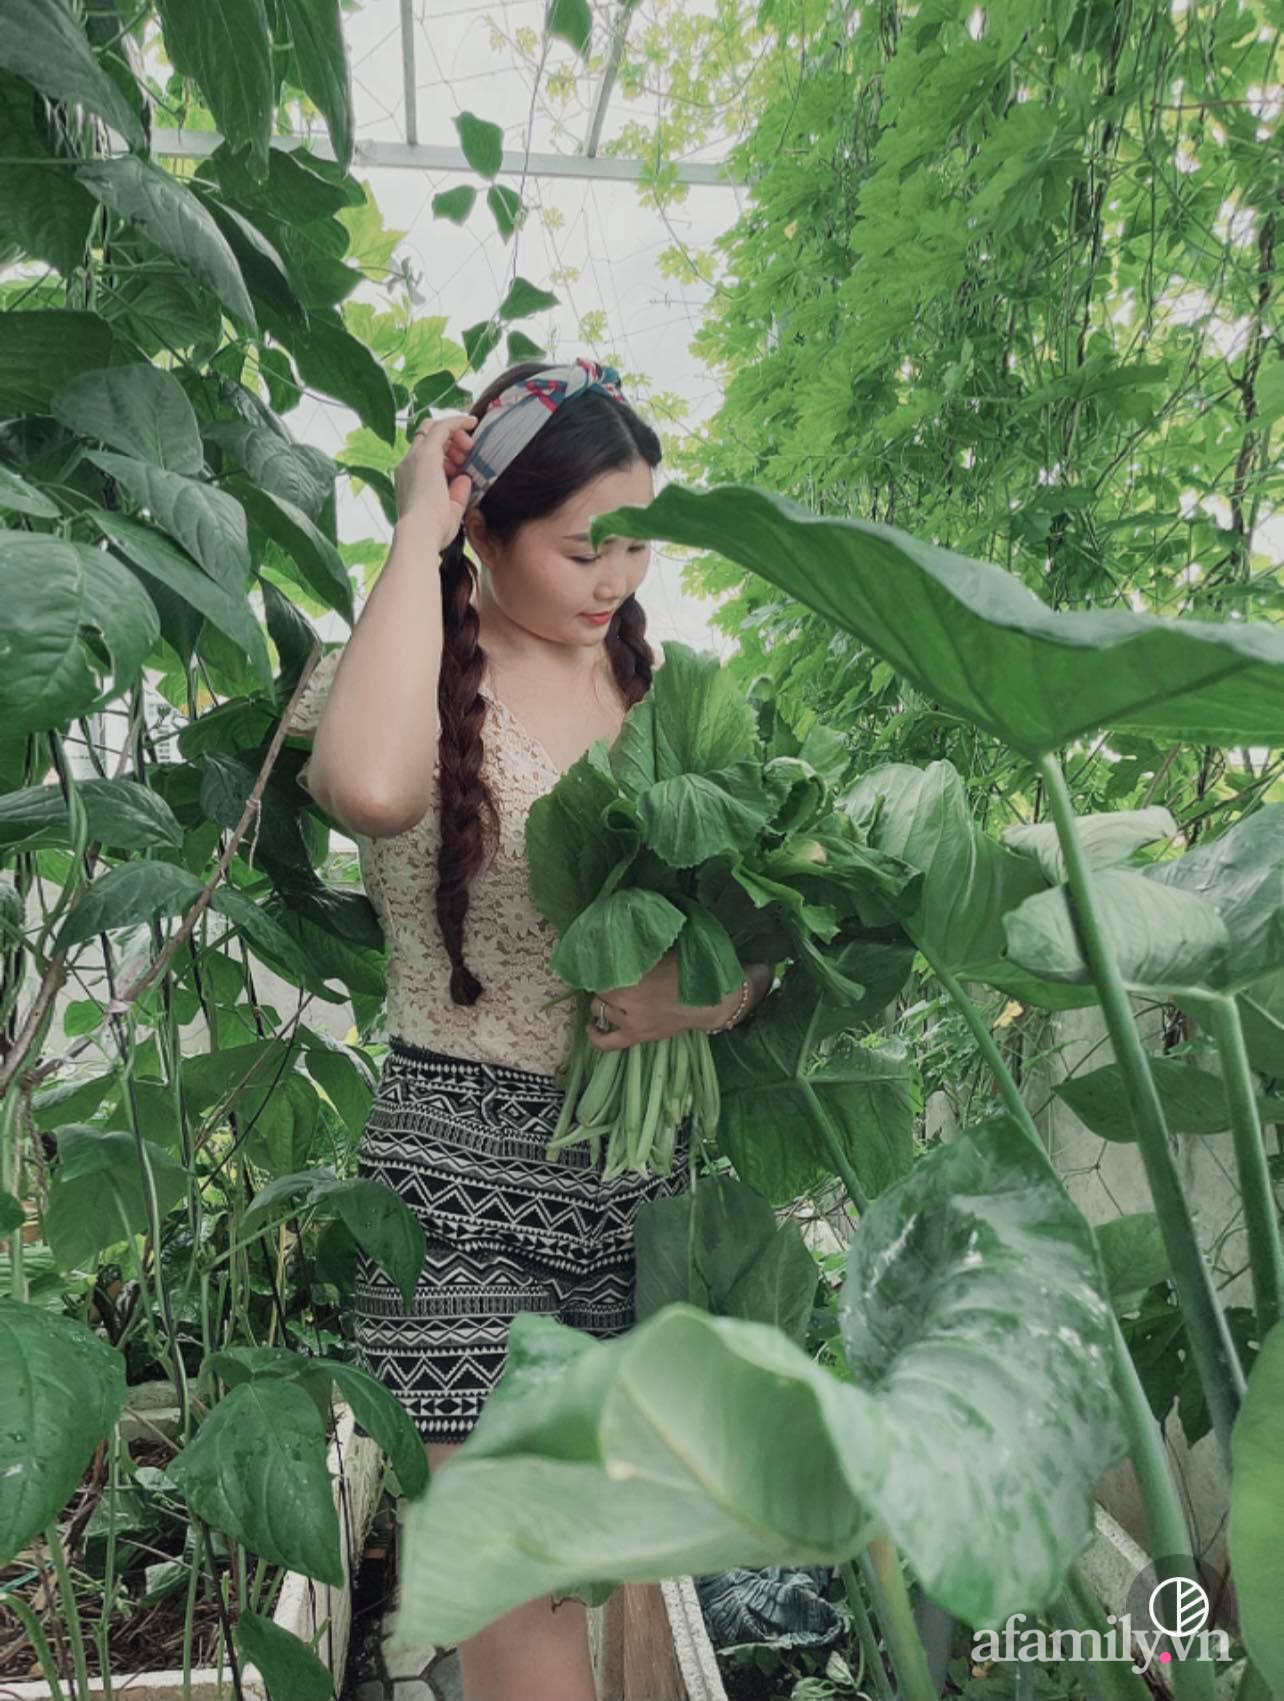 Khu vườn đầy ắp rau xanh trái ngọt giúp mẹ đảm hai con &quot;chia ngọt sẻ bùi&quot; cho người xung quanh ở Sài Gòn - Ảnh 3.